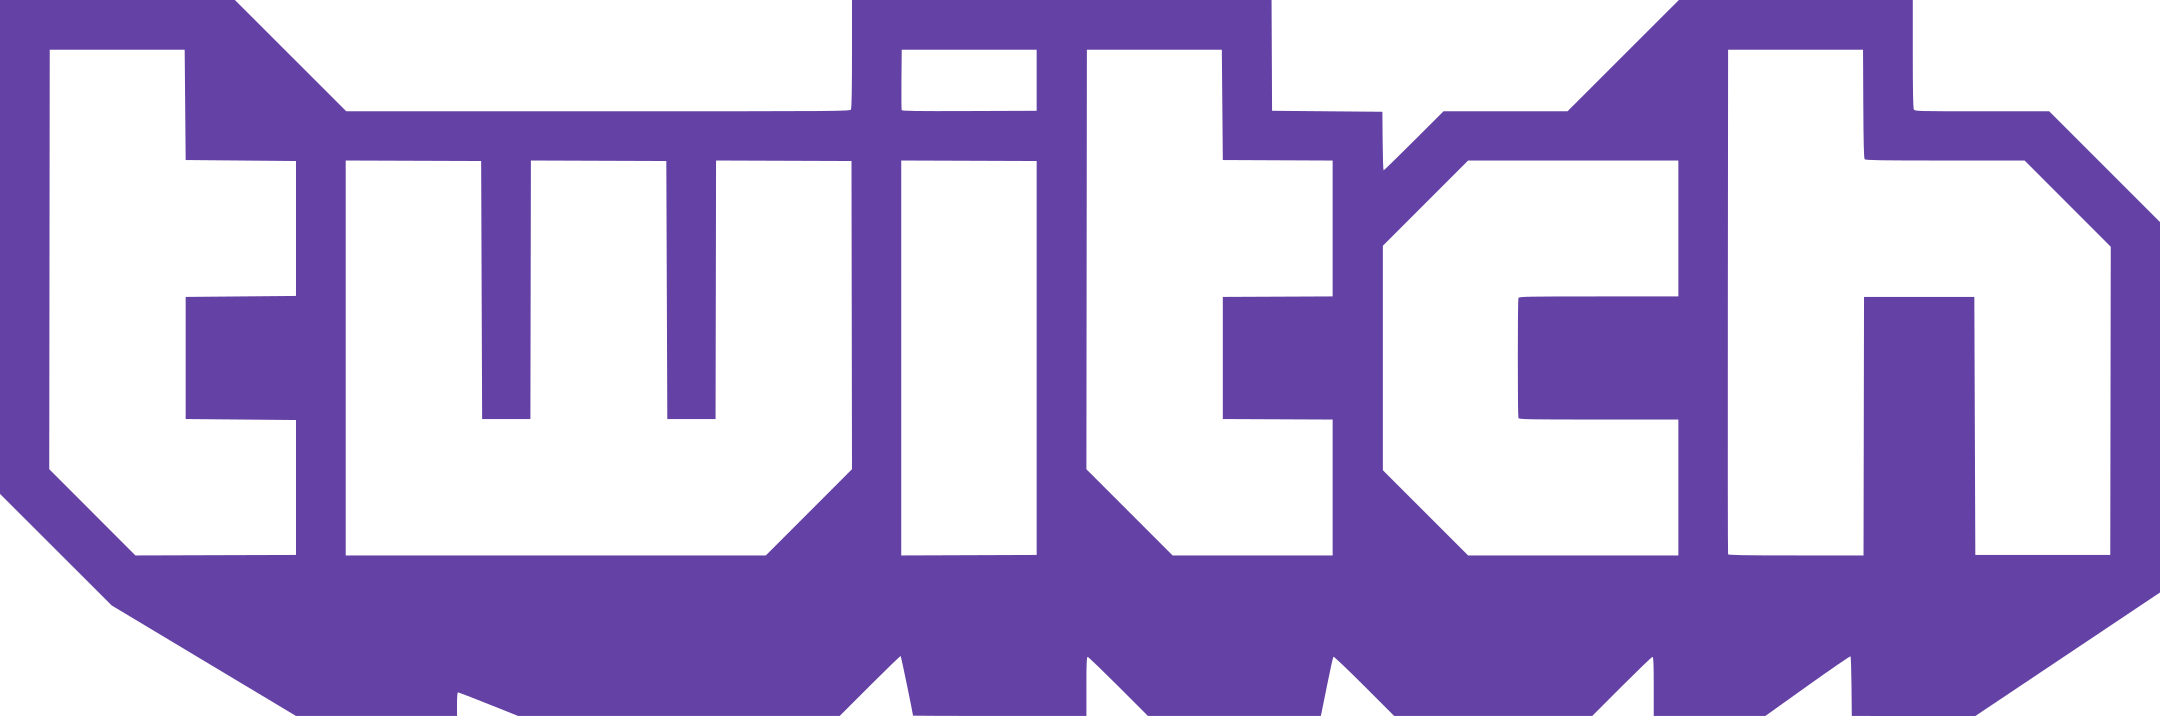 twitch logo 2 1 - Twitch Logo